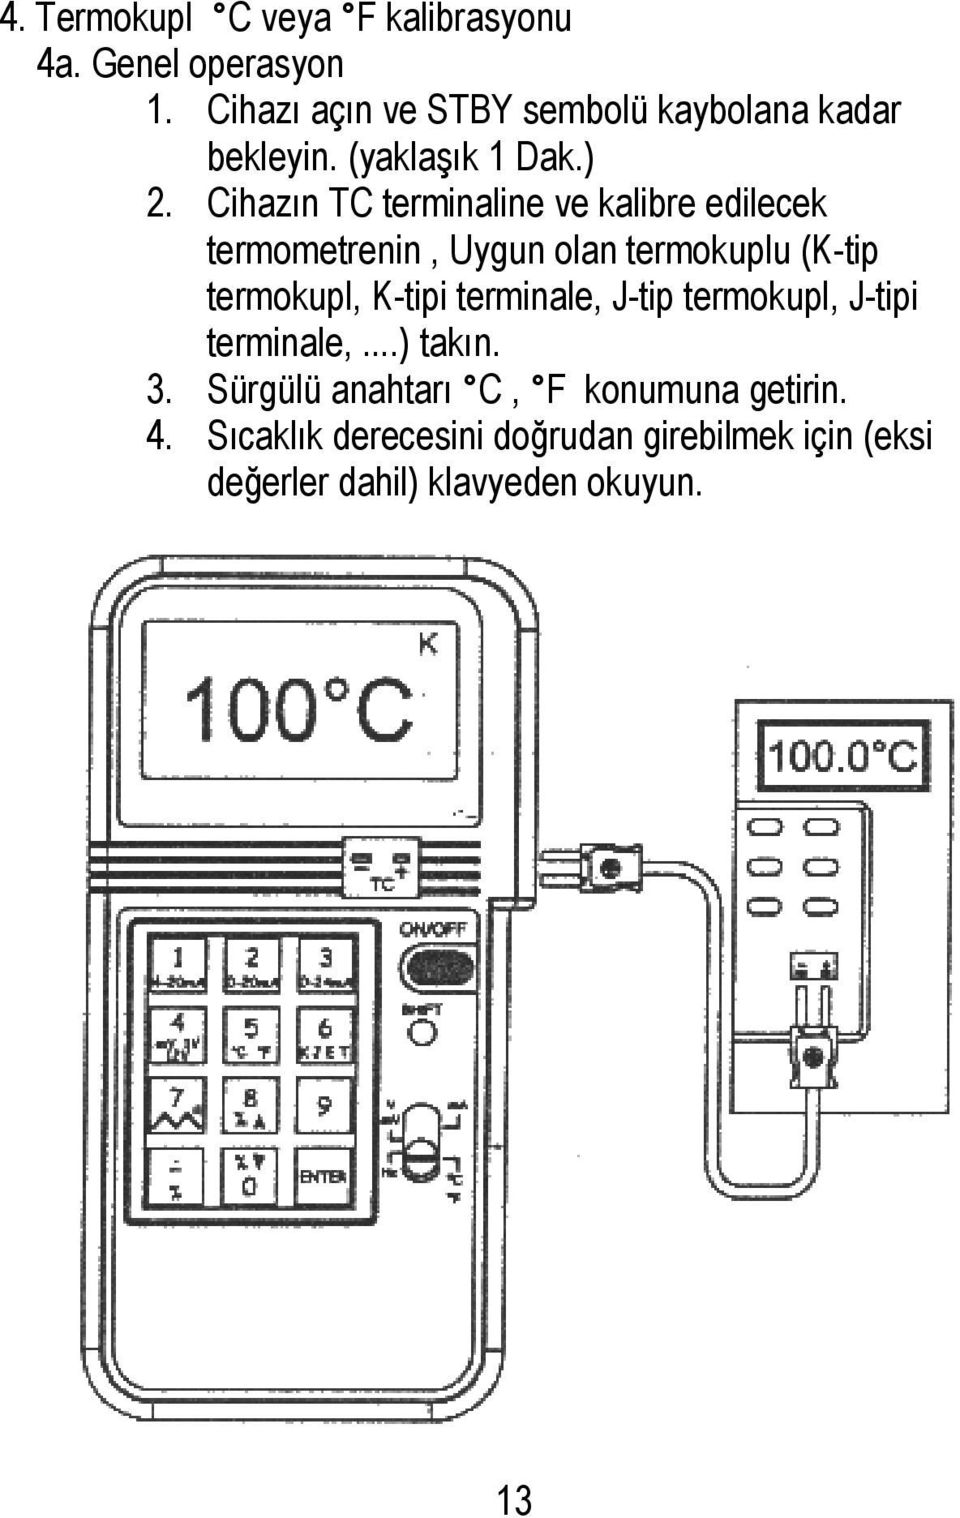 Cihazın TC terminaline ve kalibre edilecek termometrenin, Uygun olan termokuplu (K-tip termokupl, K-tipi